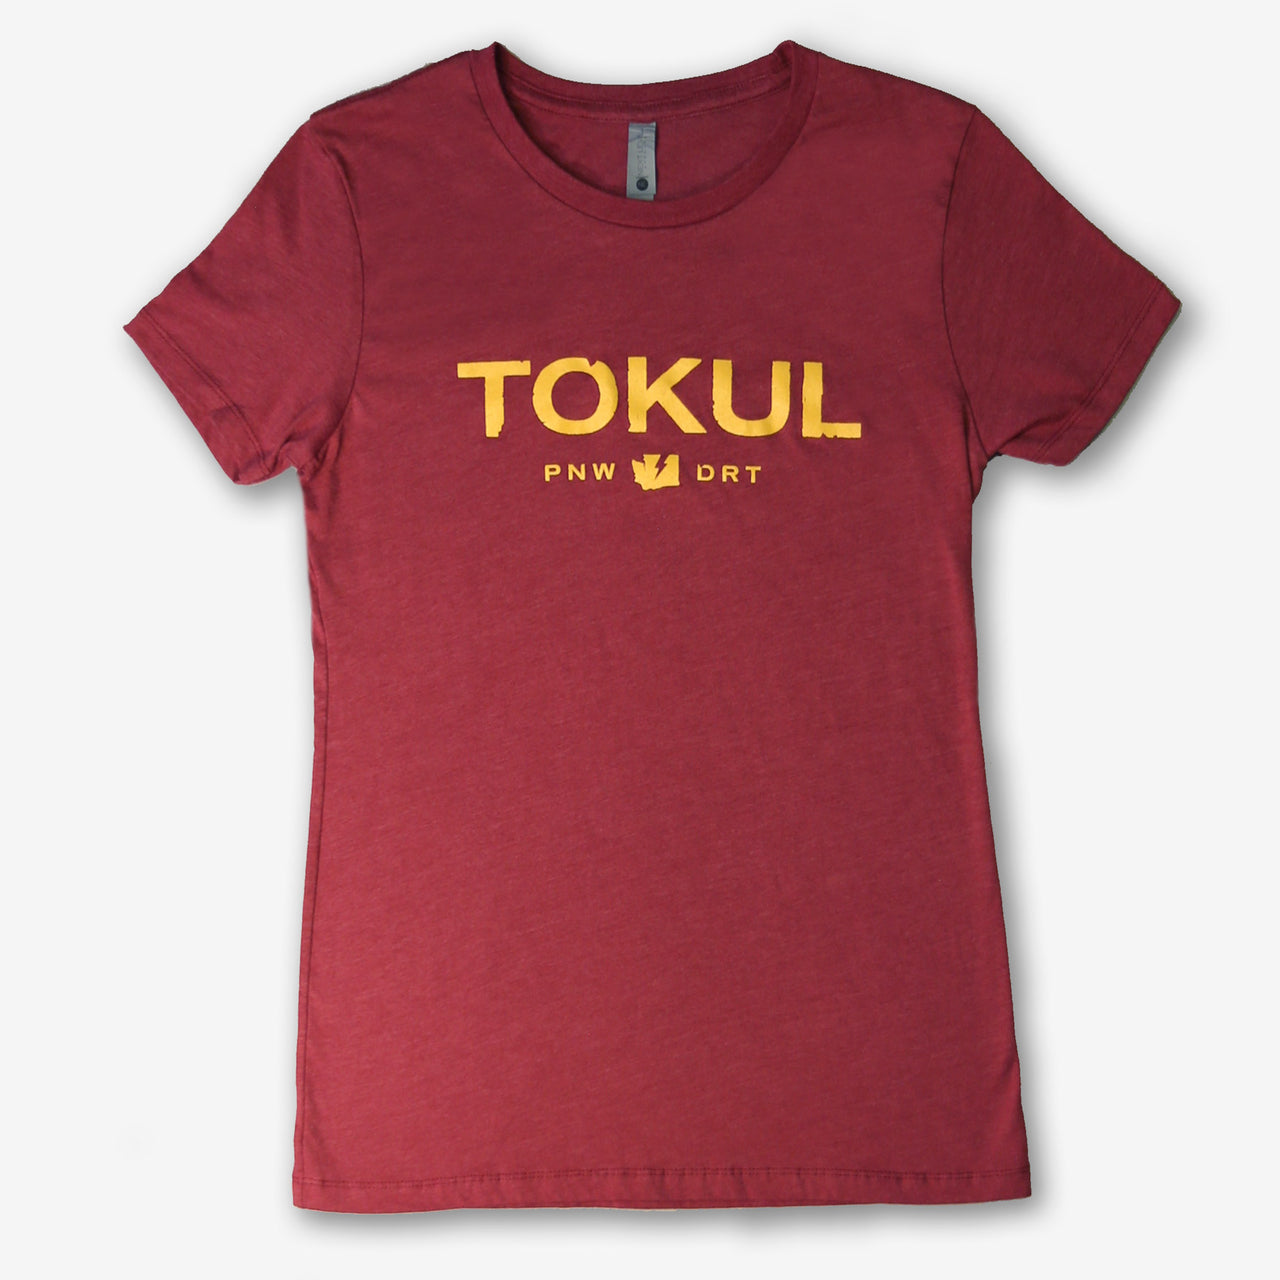 Tokul Dirt T-Shirt - Women's